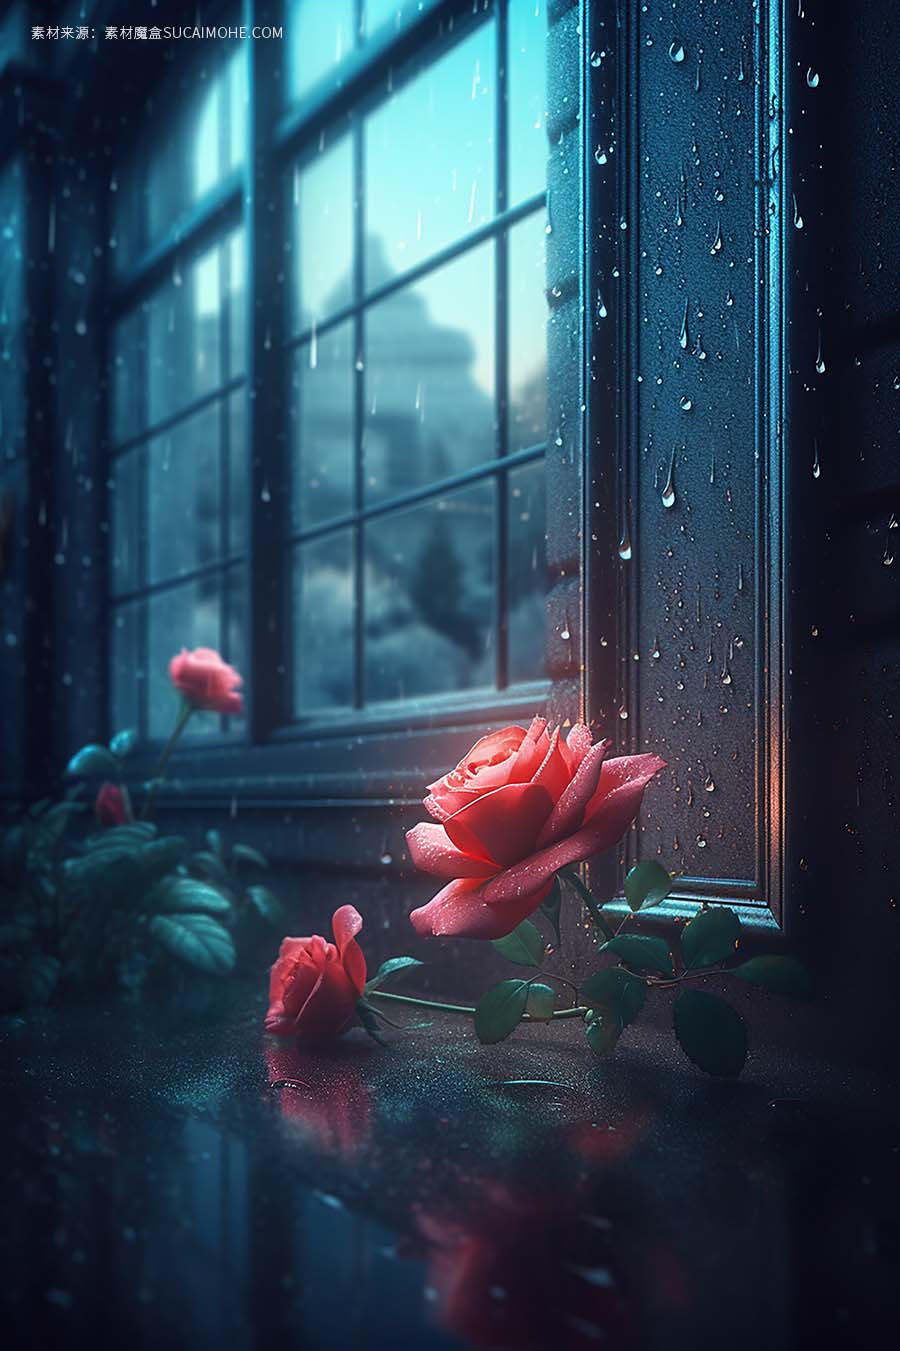 窗边的红玫瑰给房间带来了一丝浪漫的生成